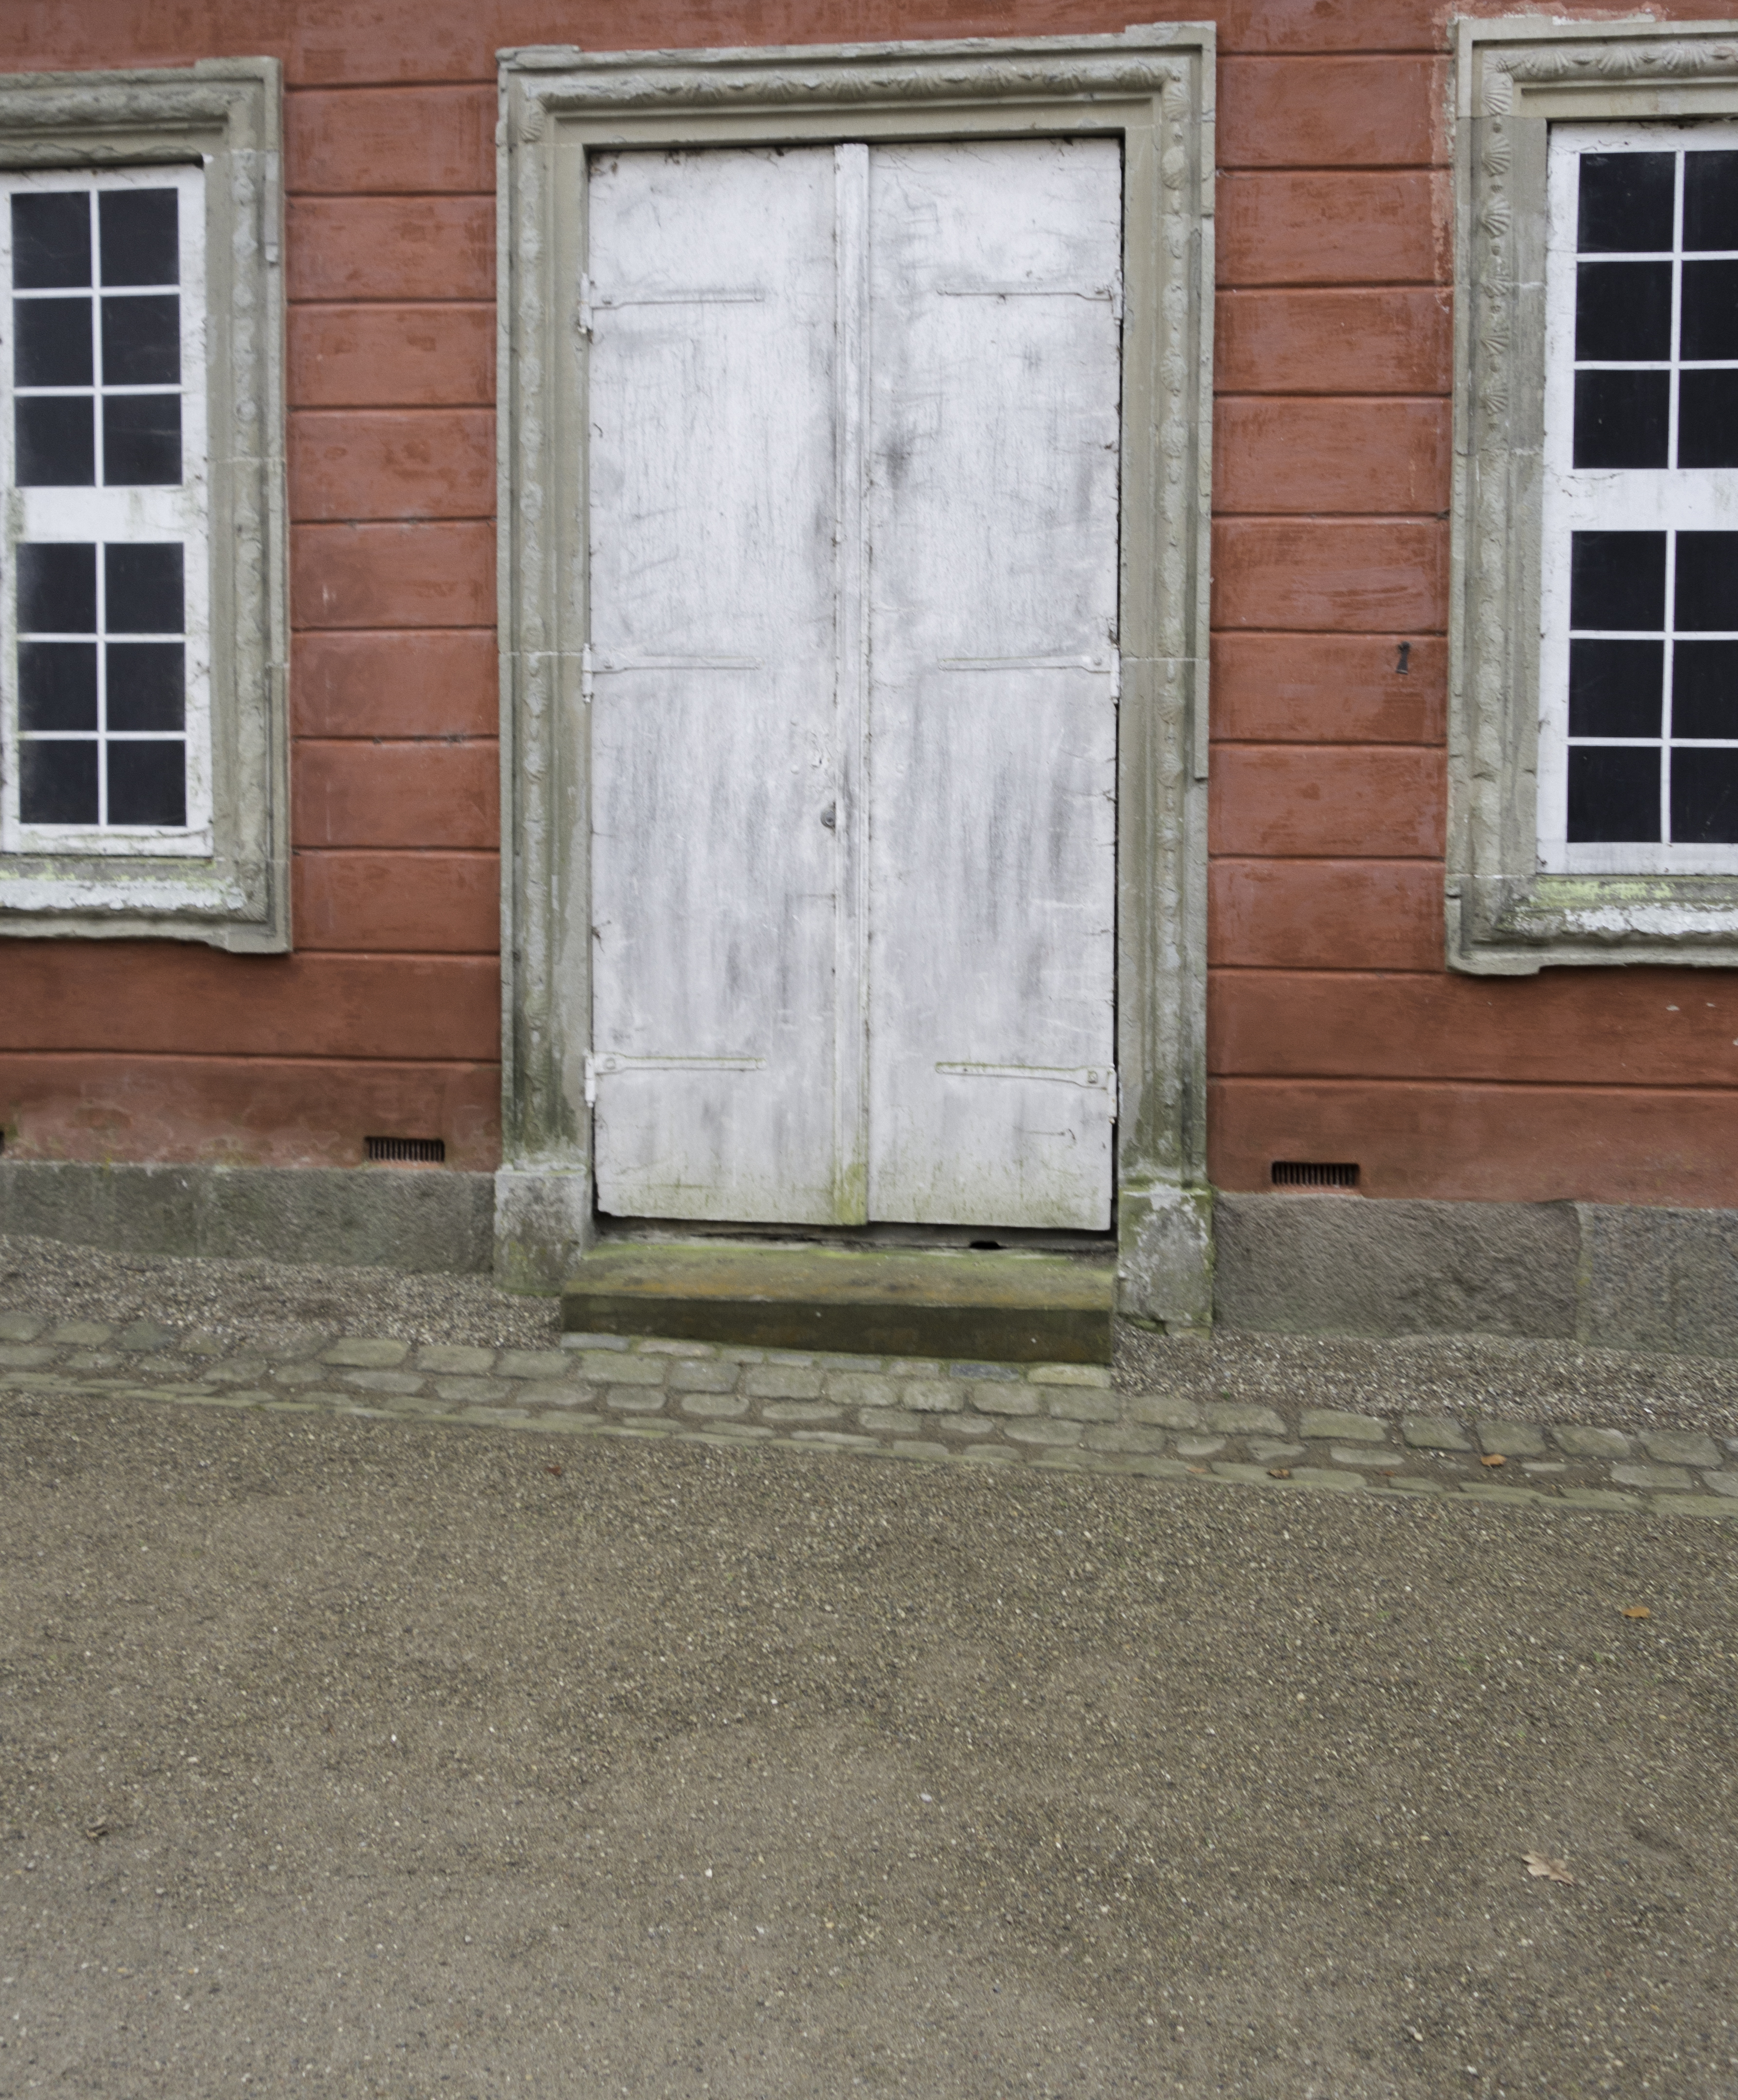 Dør vindue Fredensborg Slot.jpg